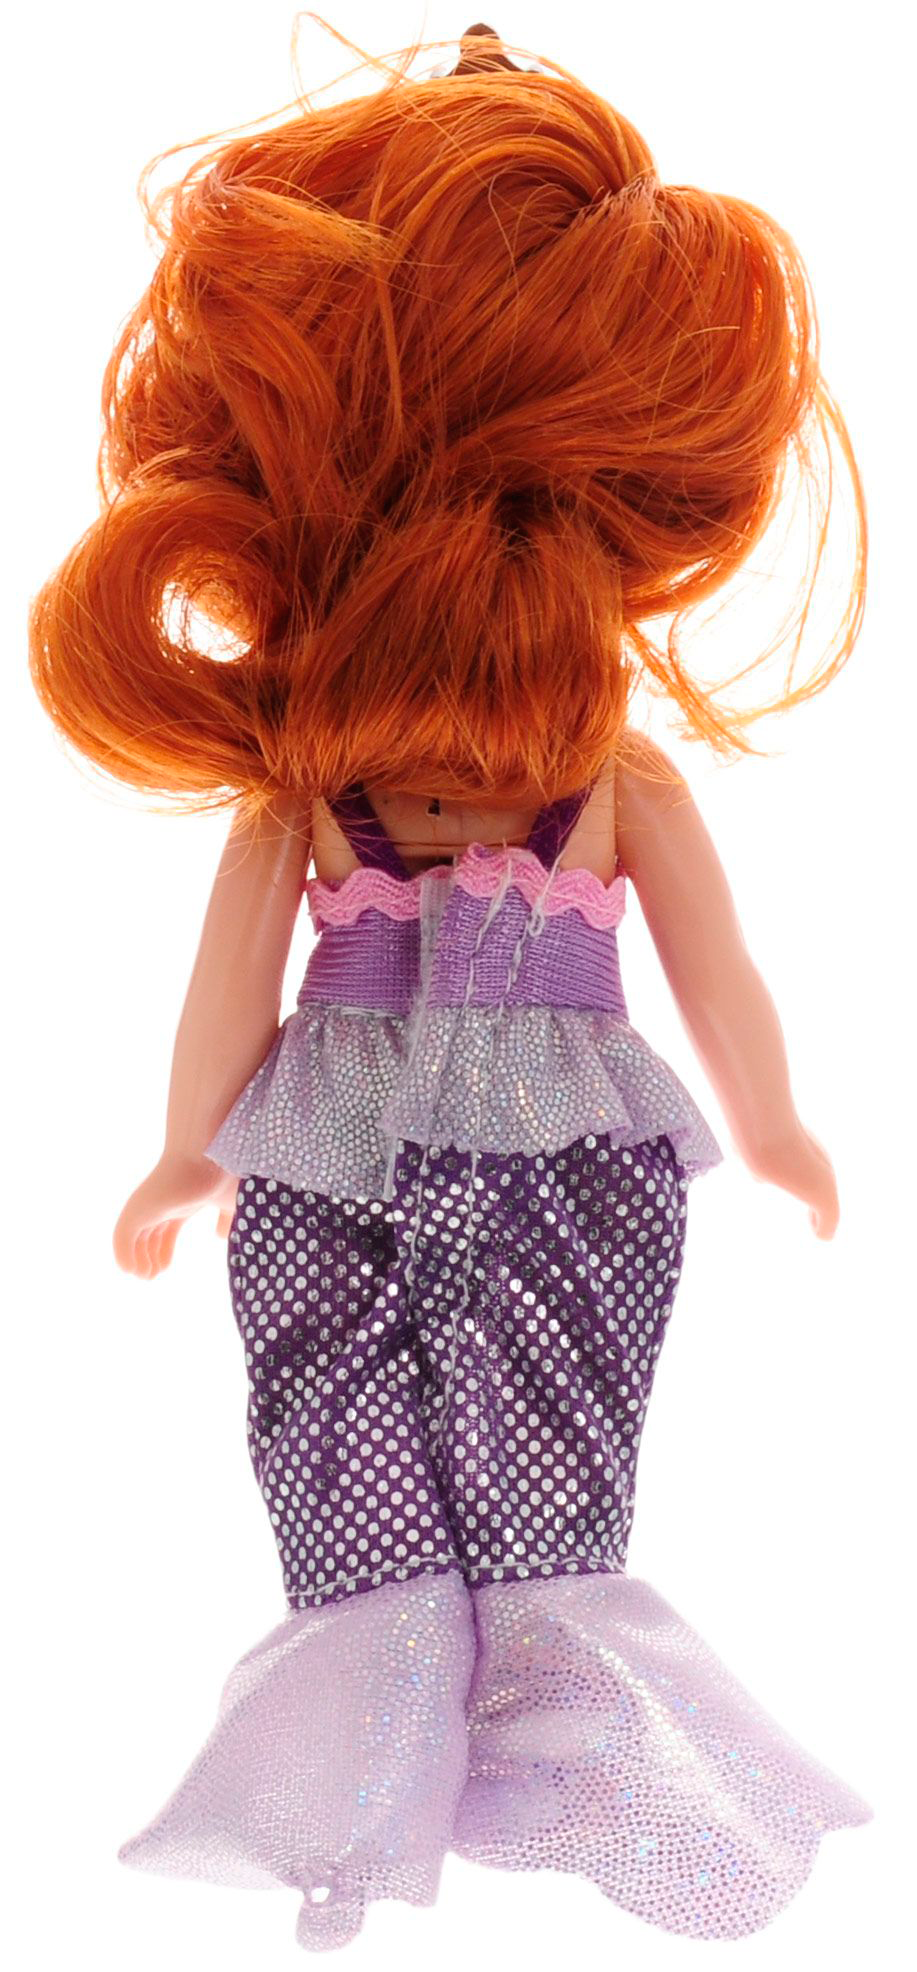 Интерактивная кукла Disney - Принцесса София в костюме русалочки, 15 см  